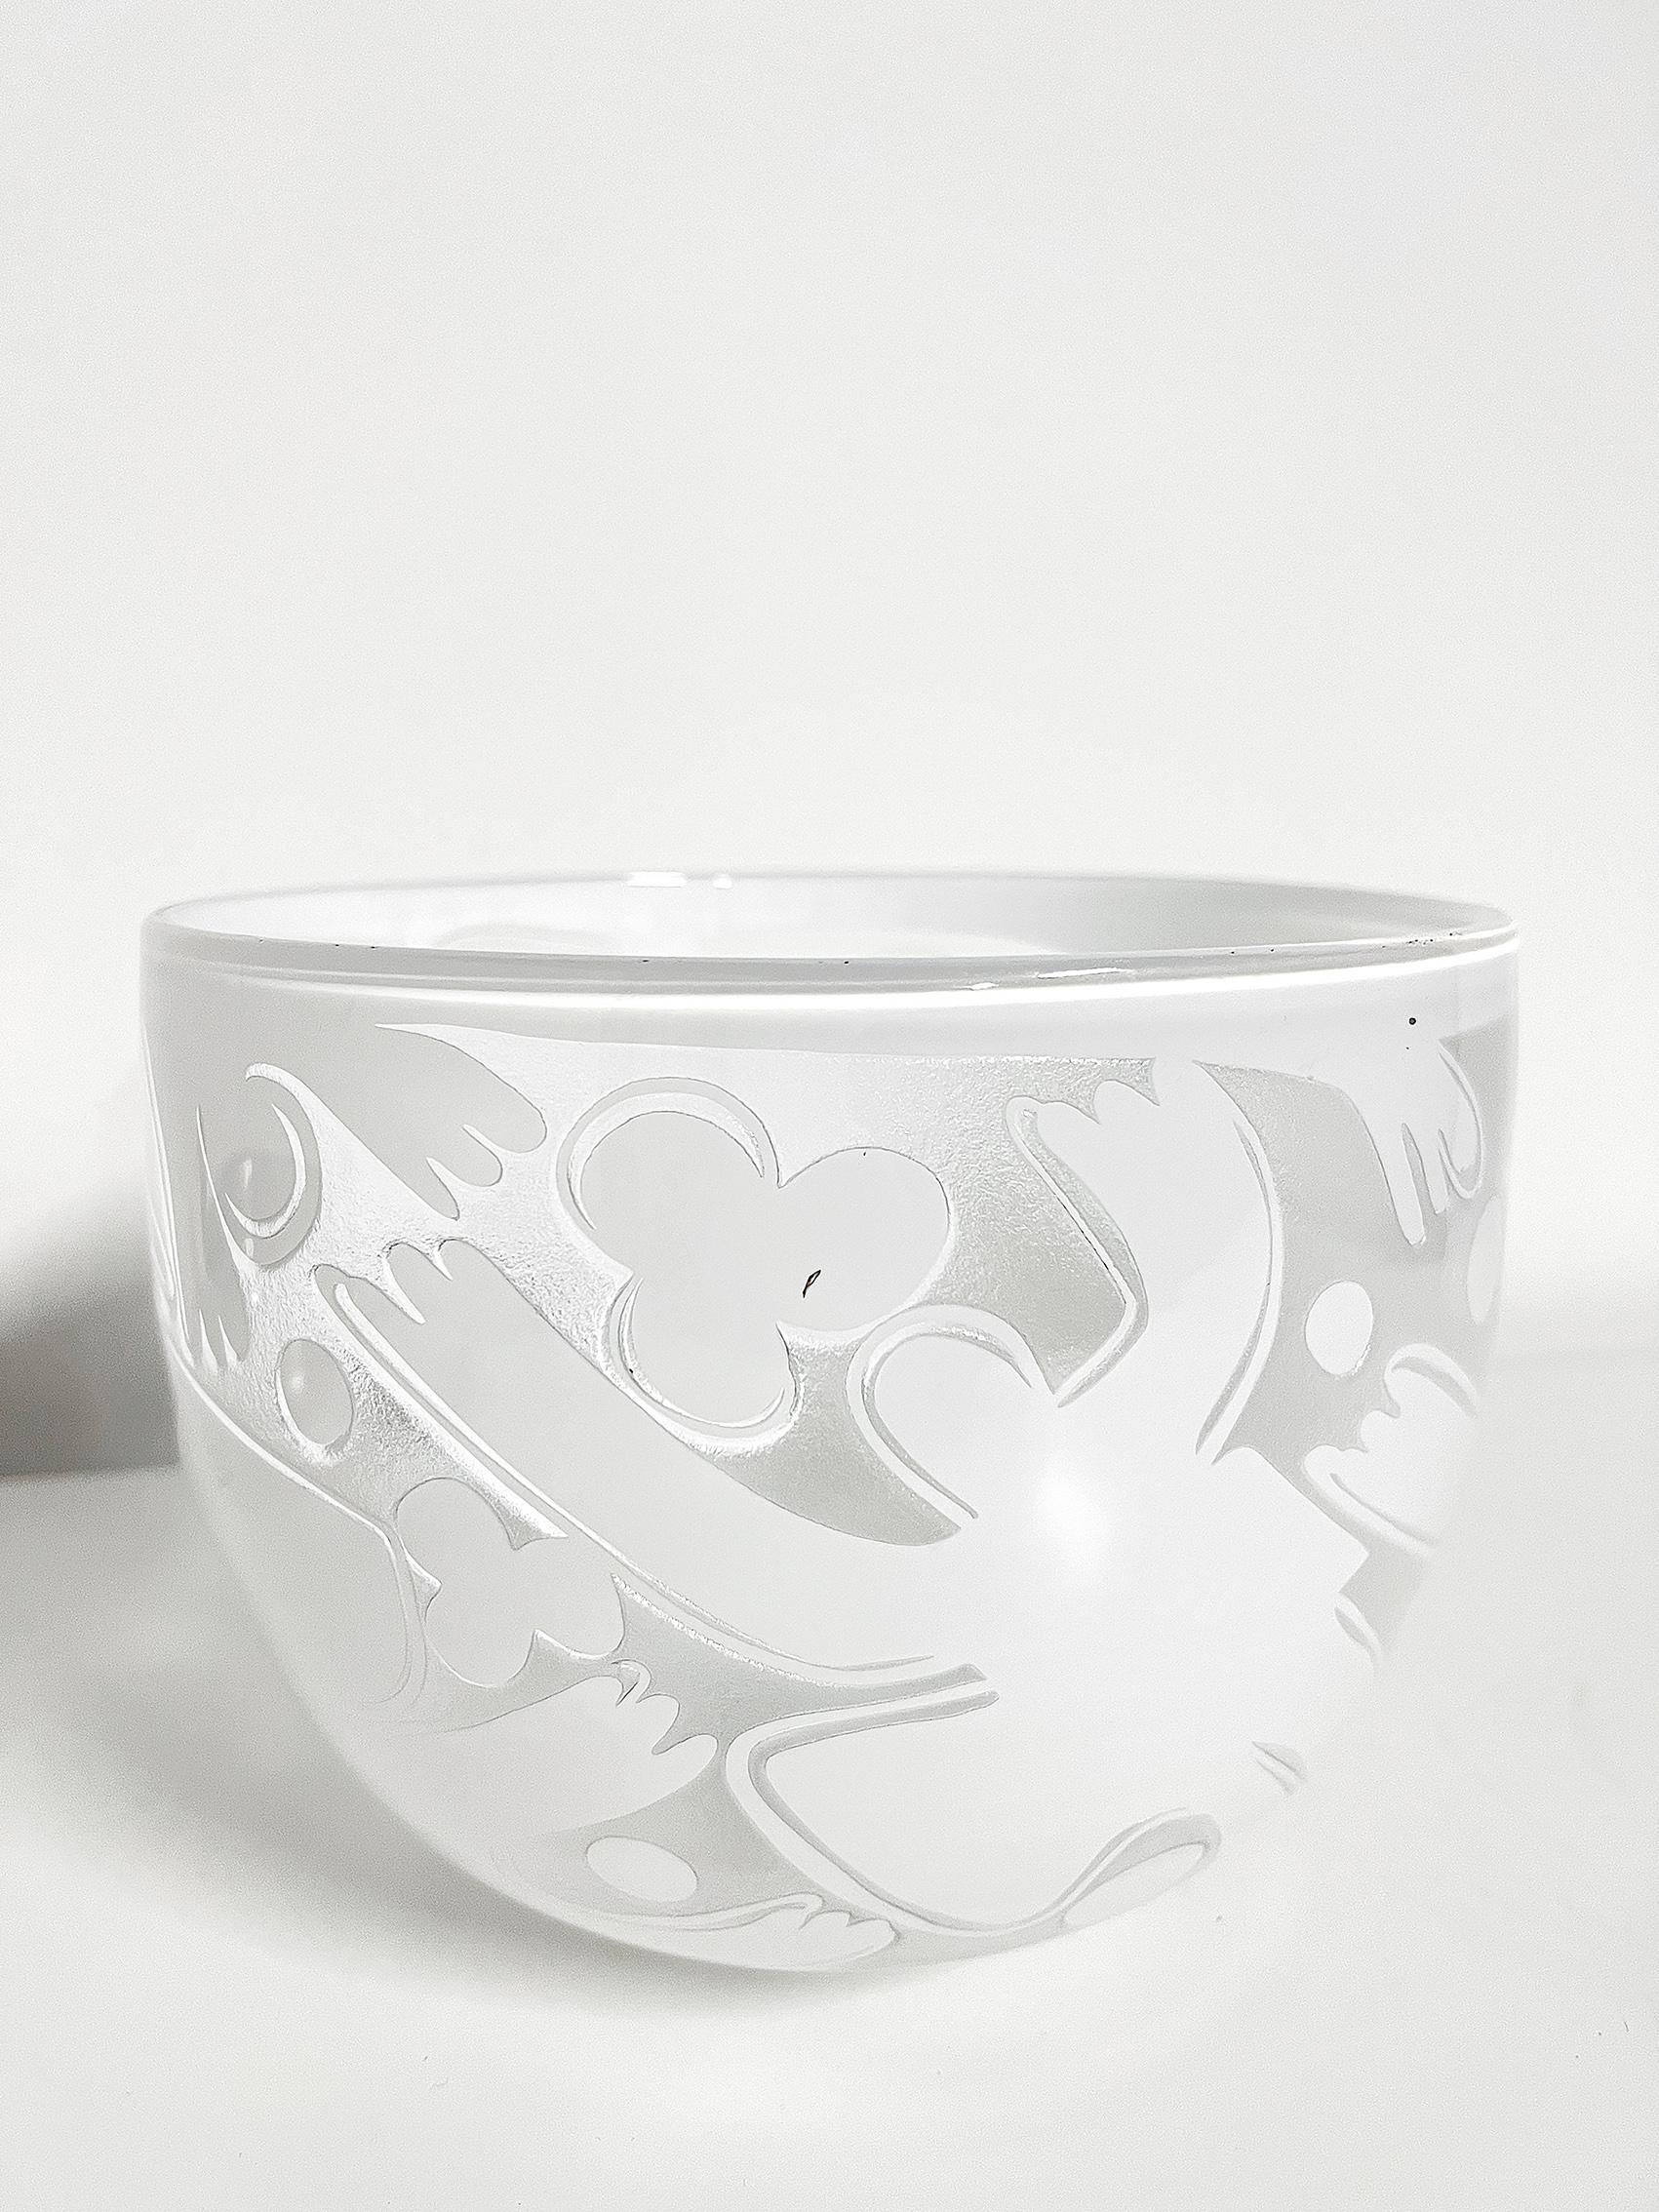 Glass Unique Scandinavian Modern Bowl in Glas by Bertil Vallien for Boda Åfors For Sale